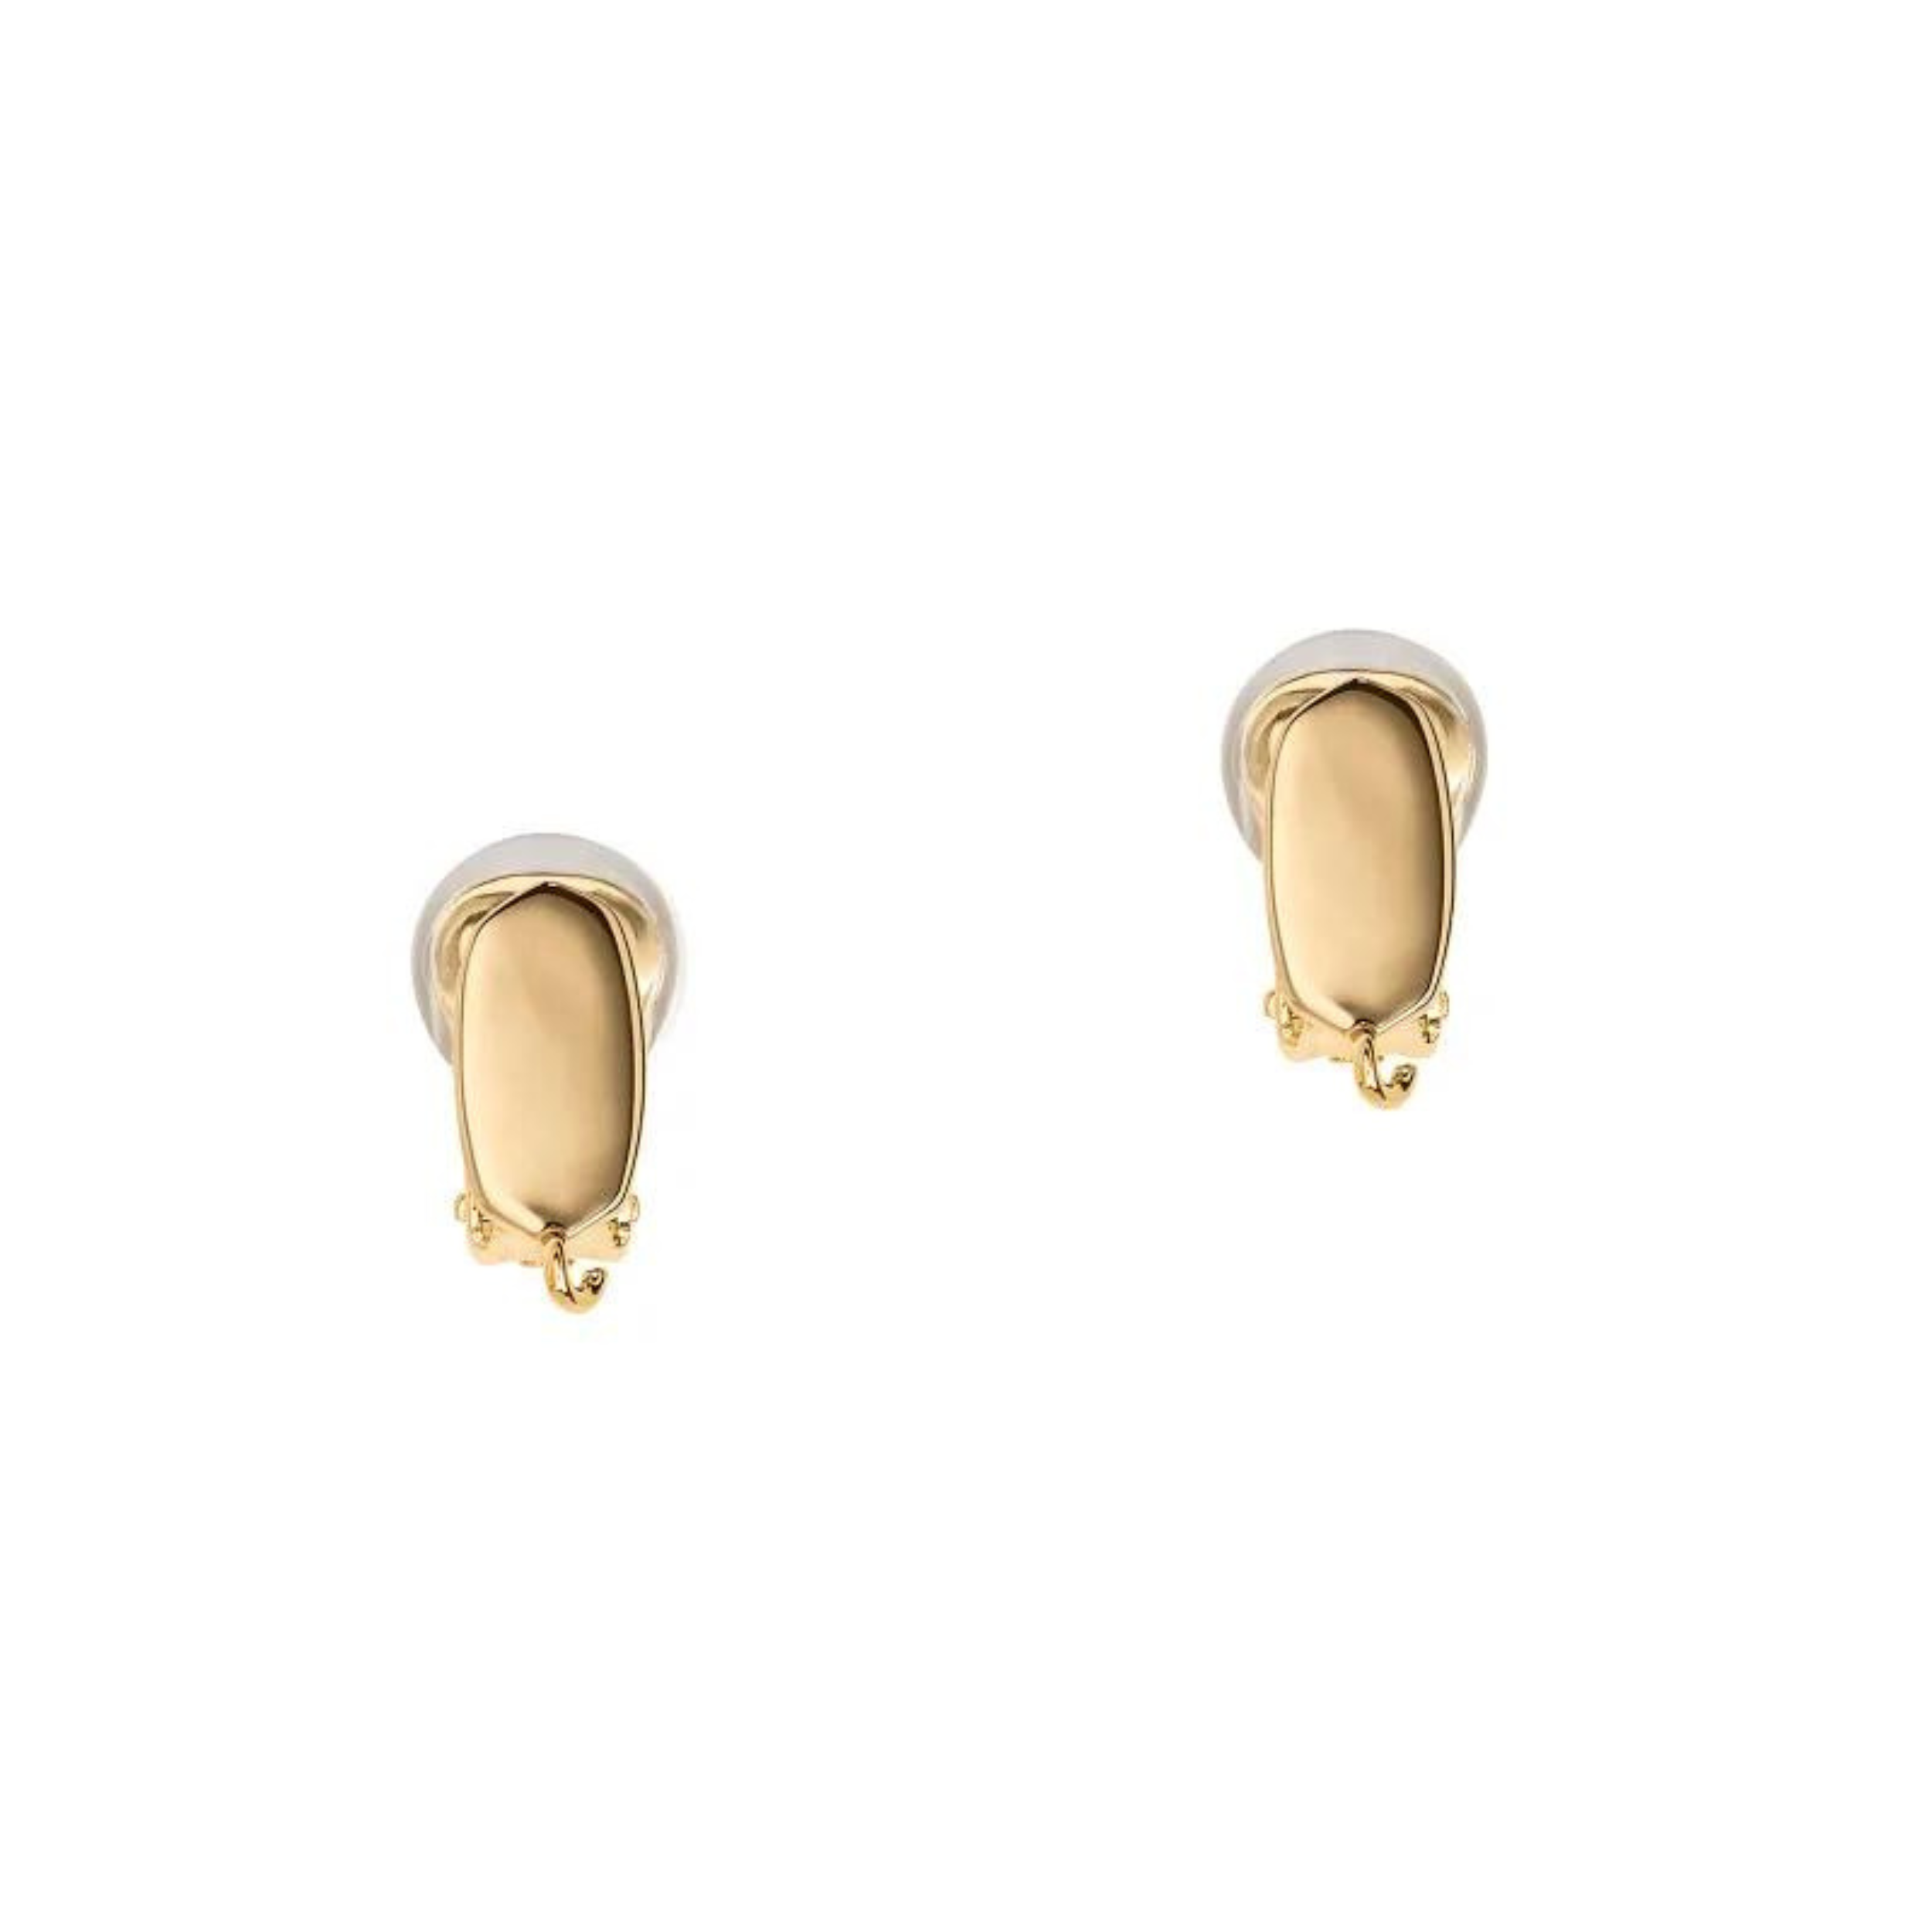 Gold clip on earring converter.